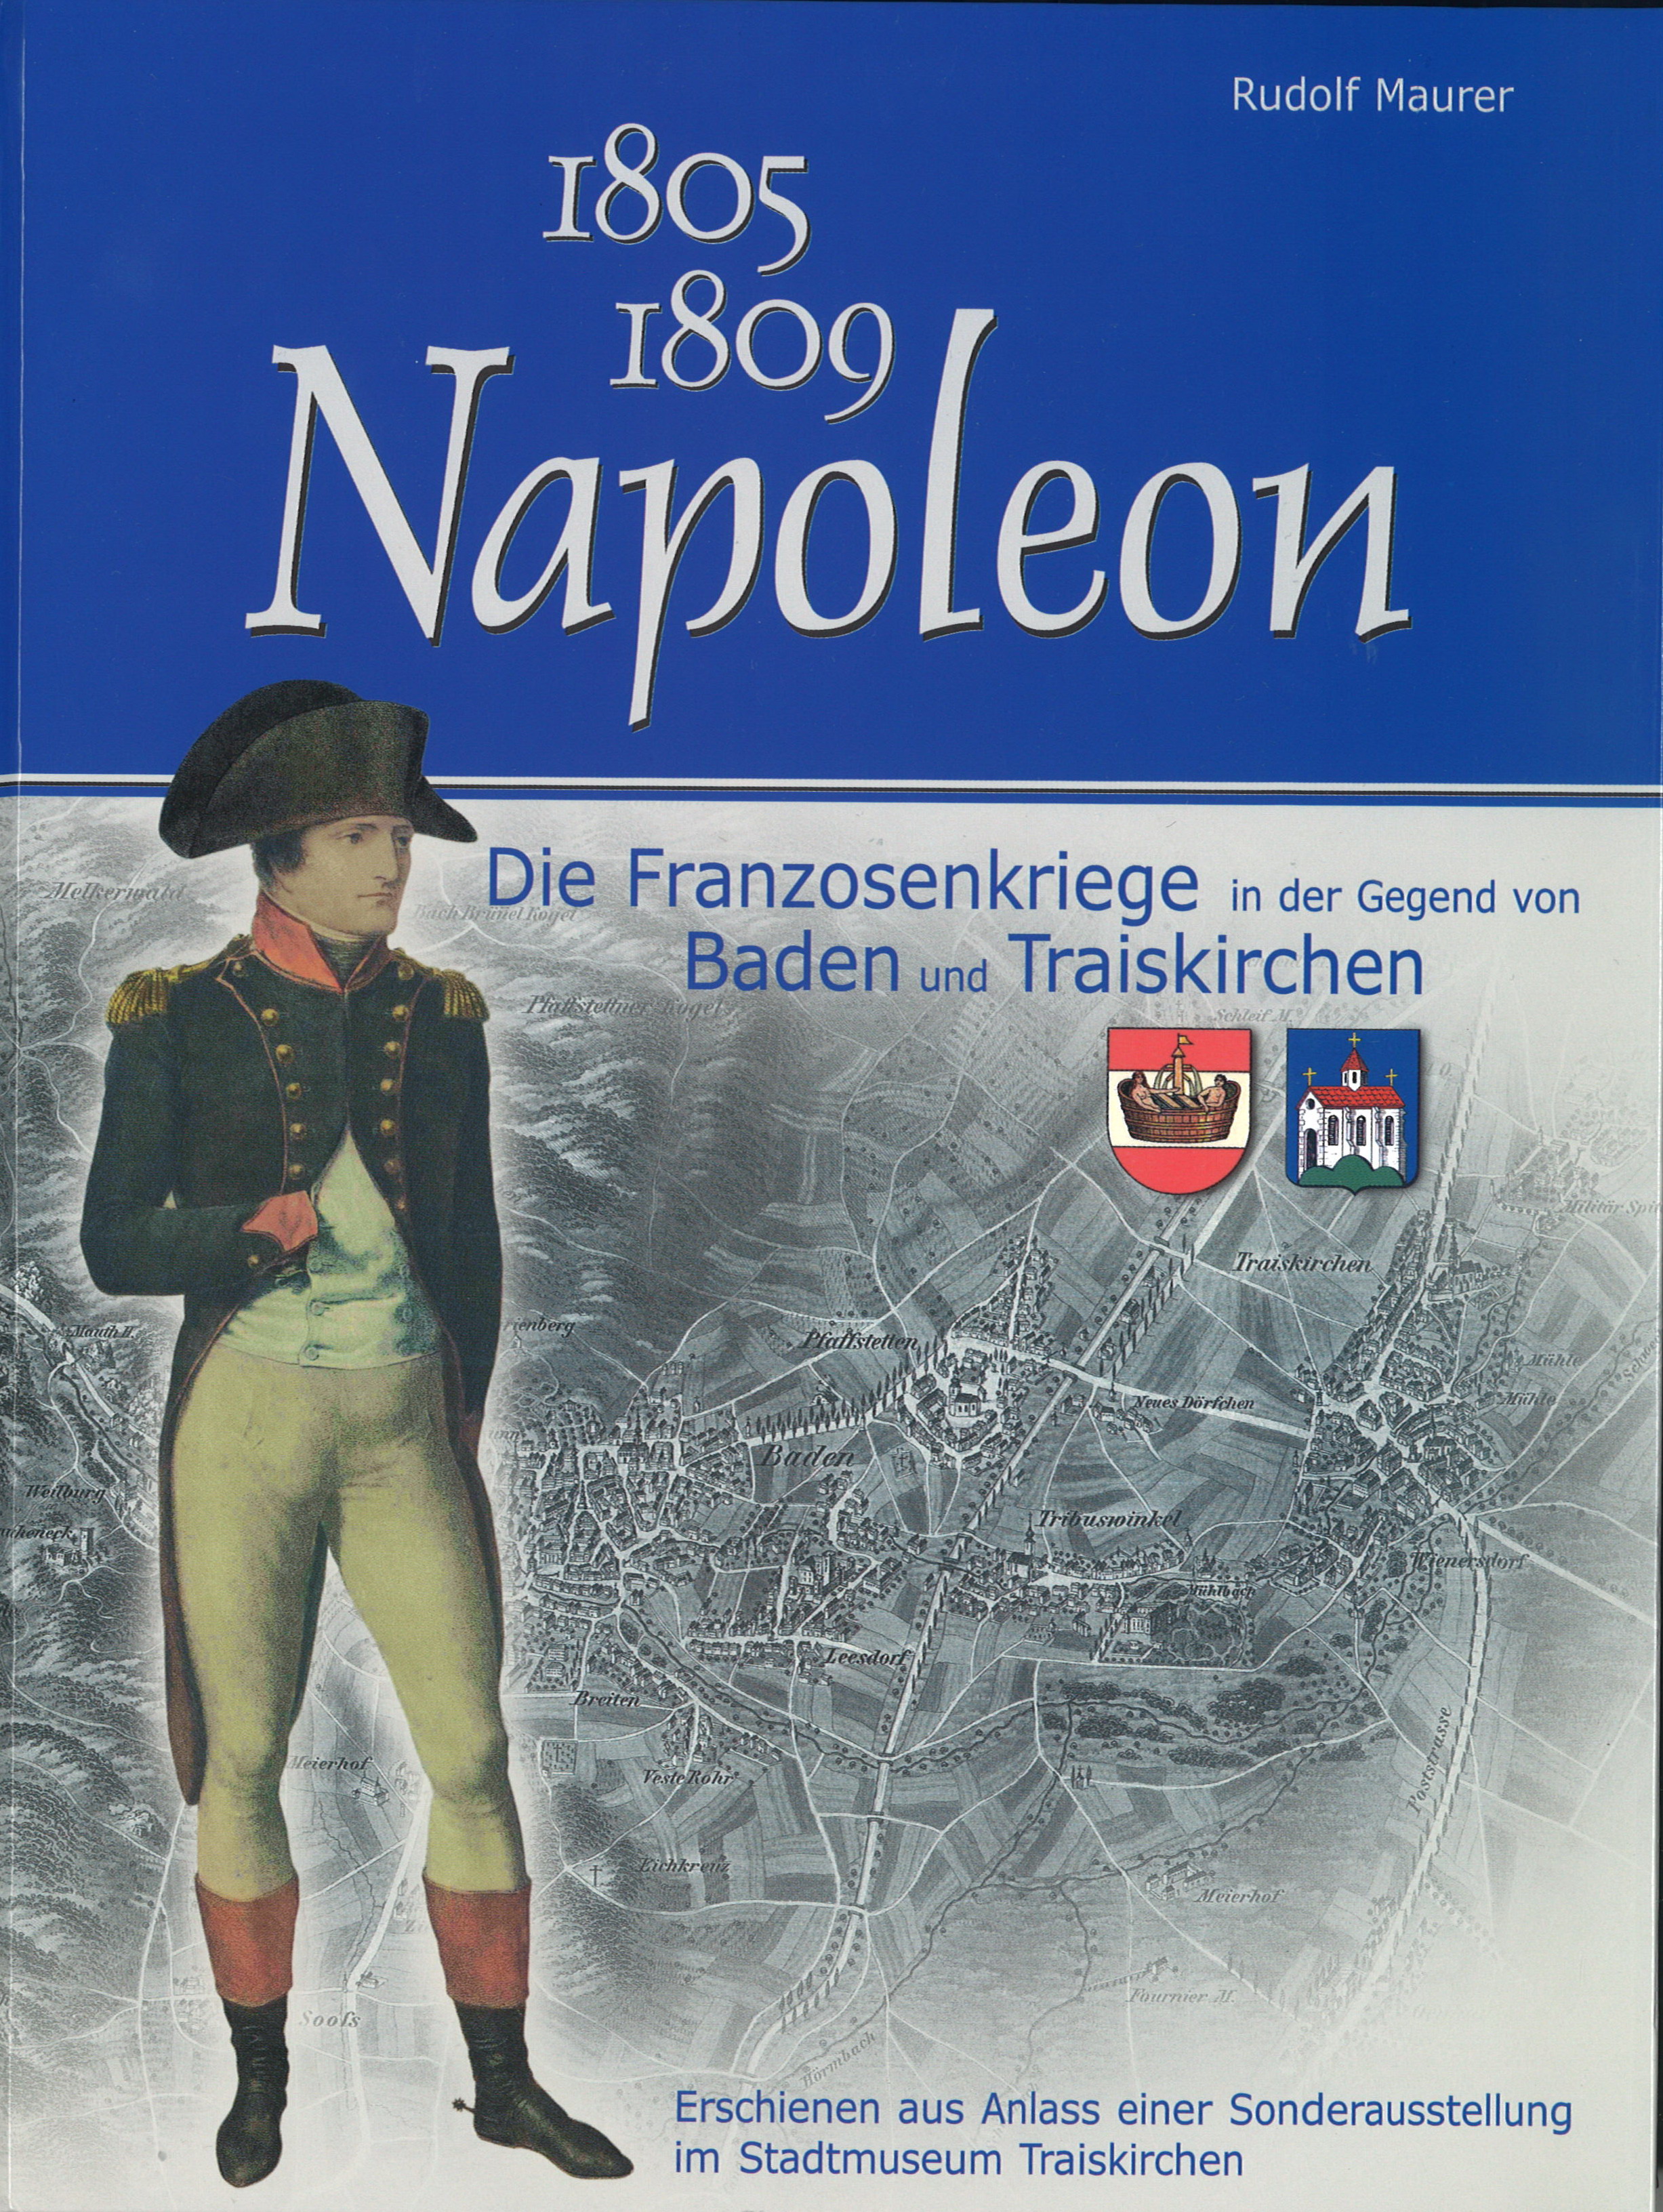 1805 – 1809 Napoleon, Die Franzosenkriege in der Gegend von Baden und Traiskirchen, 63 Seiten, Rudolf Maurer € 15,00